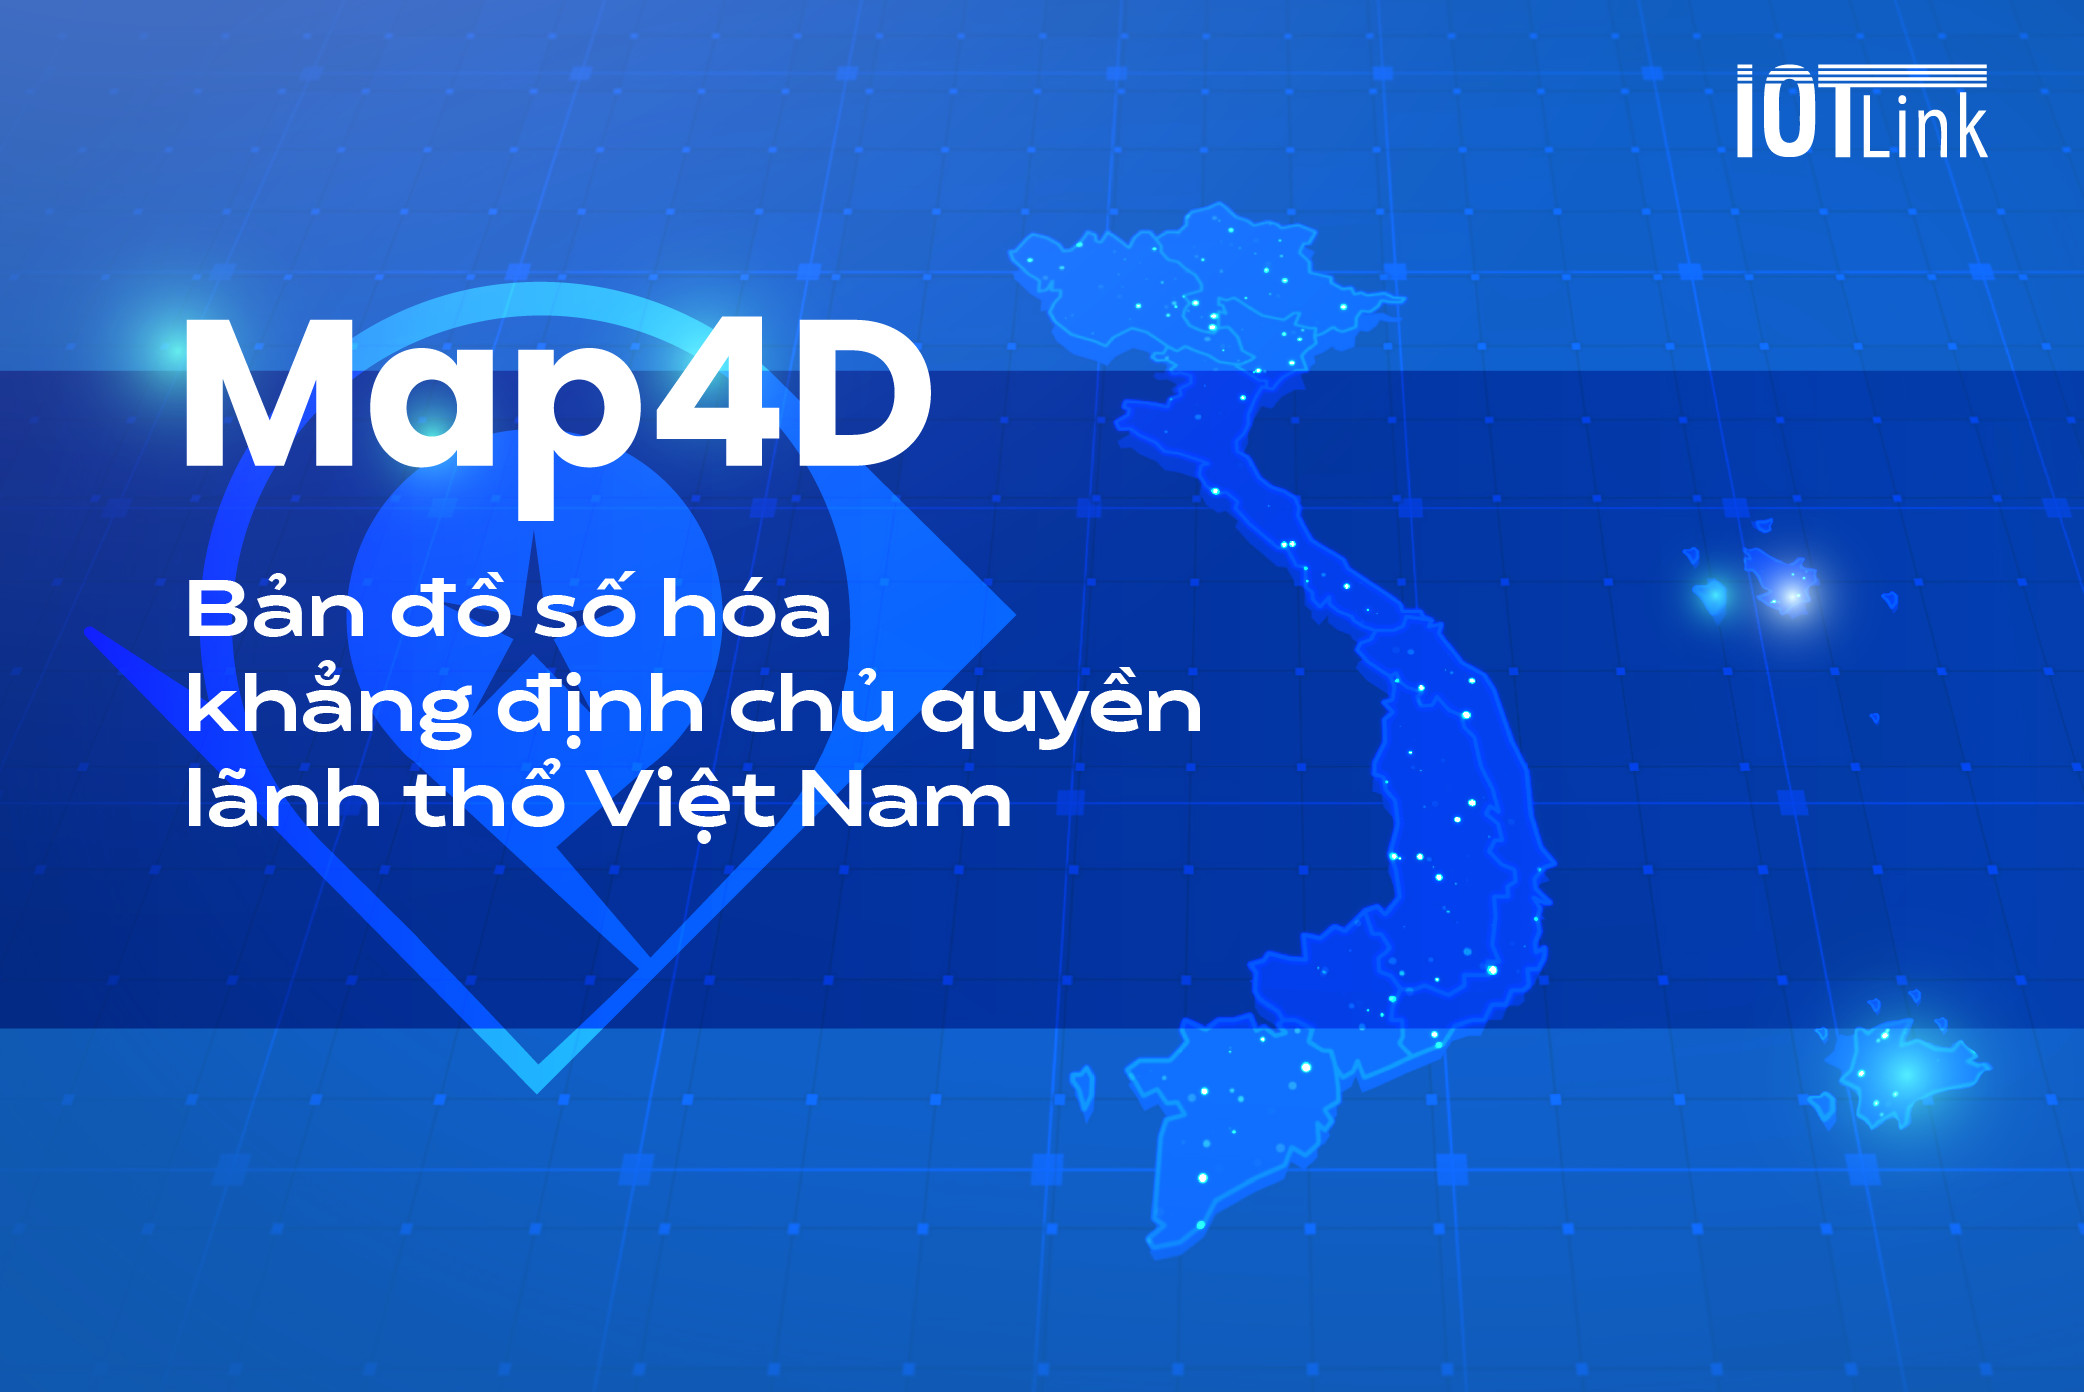 Map4D - Bản đồ số hóa khẳng định chủ quyền lãnh thổ Việt Nam